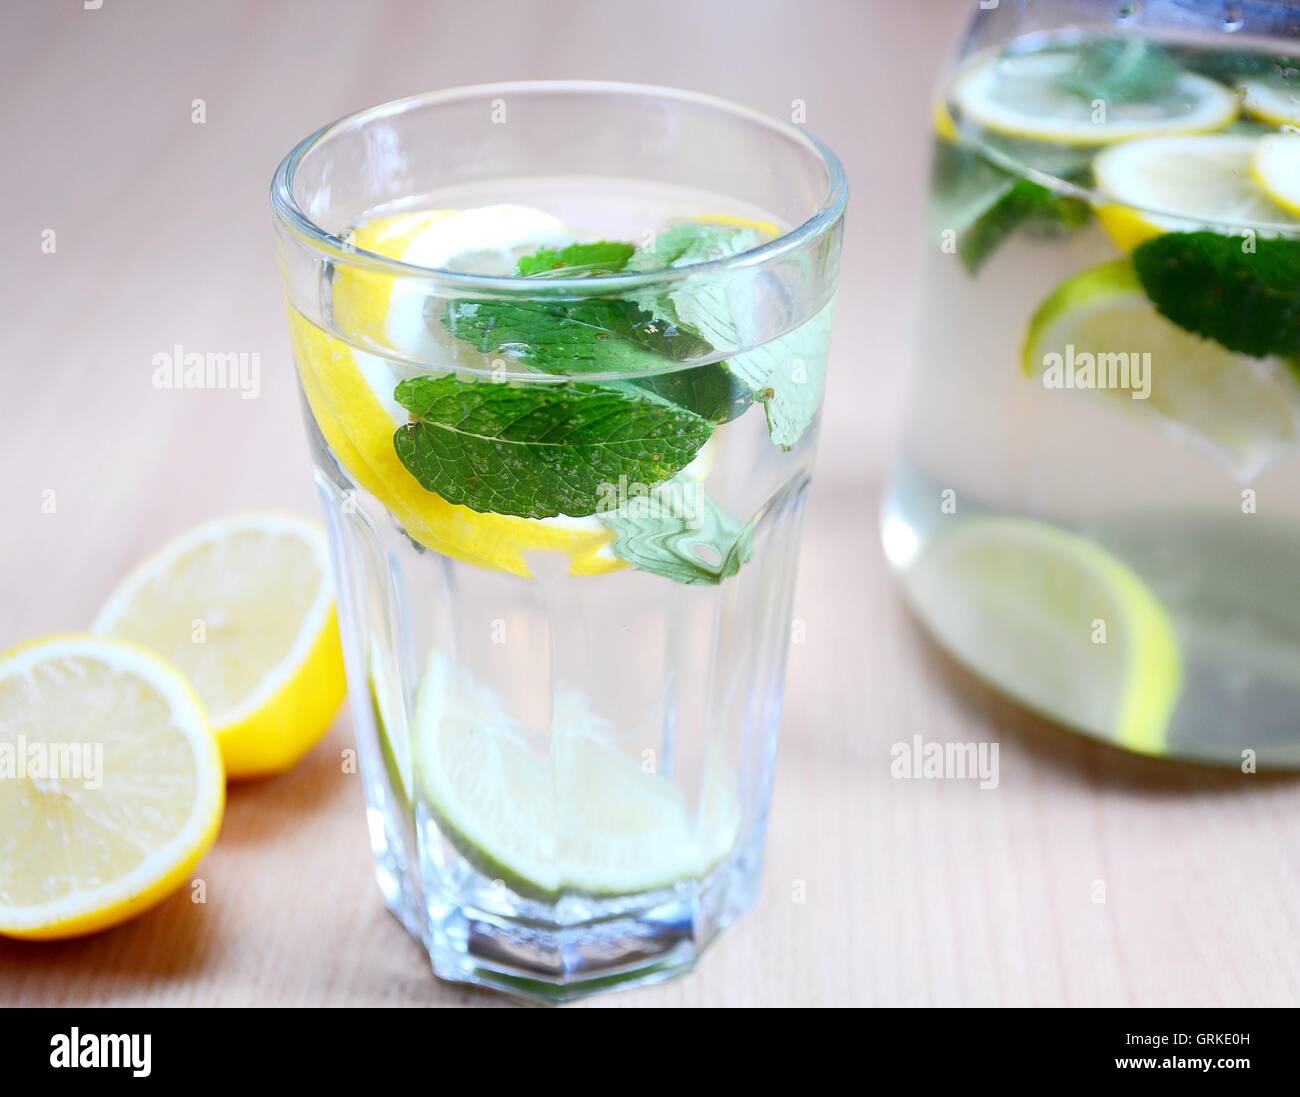 Erfrischenden alkoholfreien Drink mit Wasser, Minze, Stücke von Zitronen und Limetten im Glas. Stockfoto